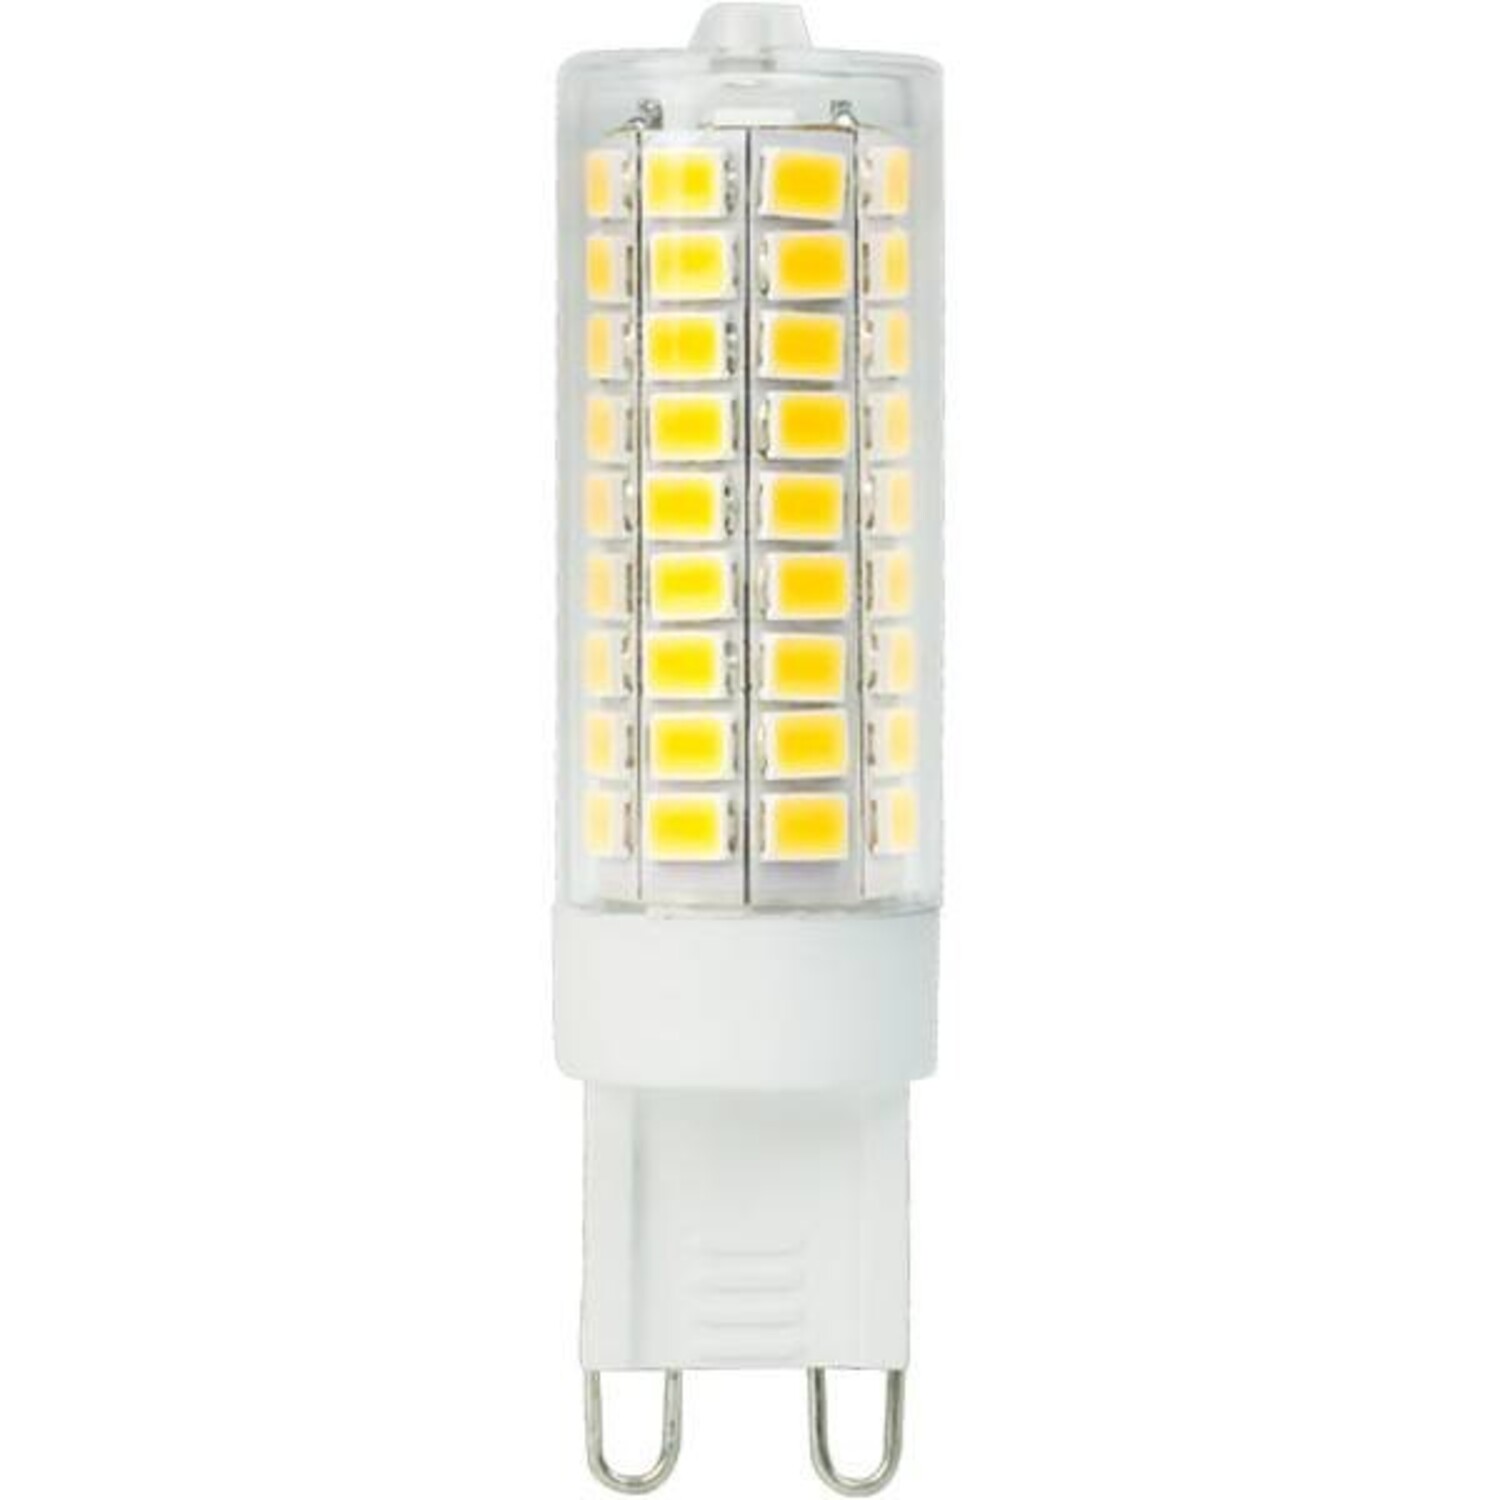 12V/24V LED-Lichtleiste 50cm 8W 450 lm warmweiss - Touch-Liste